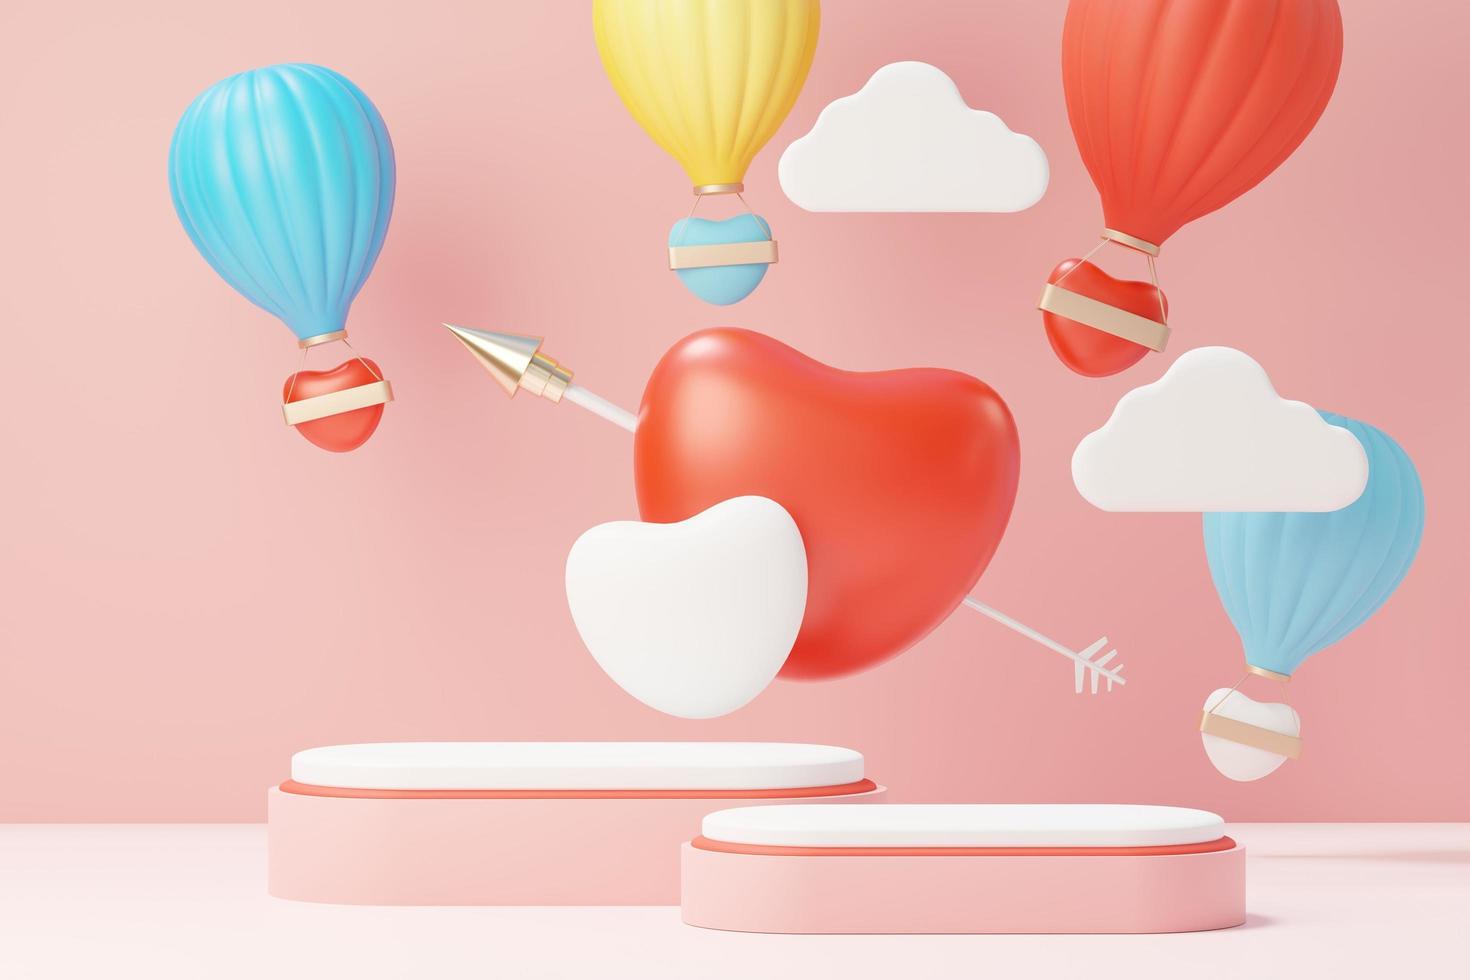 3D render minimale zoete scène met display-podium voor mock-up en productmerkpresentatie. roze voetstuk staat voor Valentijnsdag thema. schattige mooie hart achtergrond. de ontwerpstijl van de liefdesdag. foto